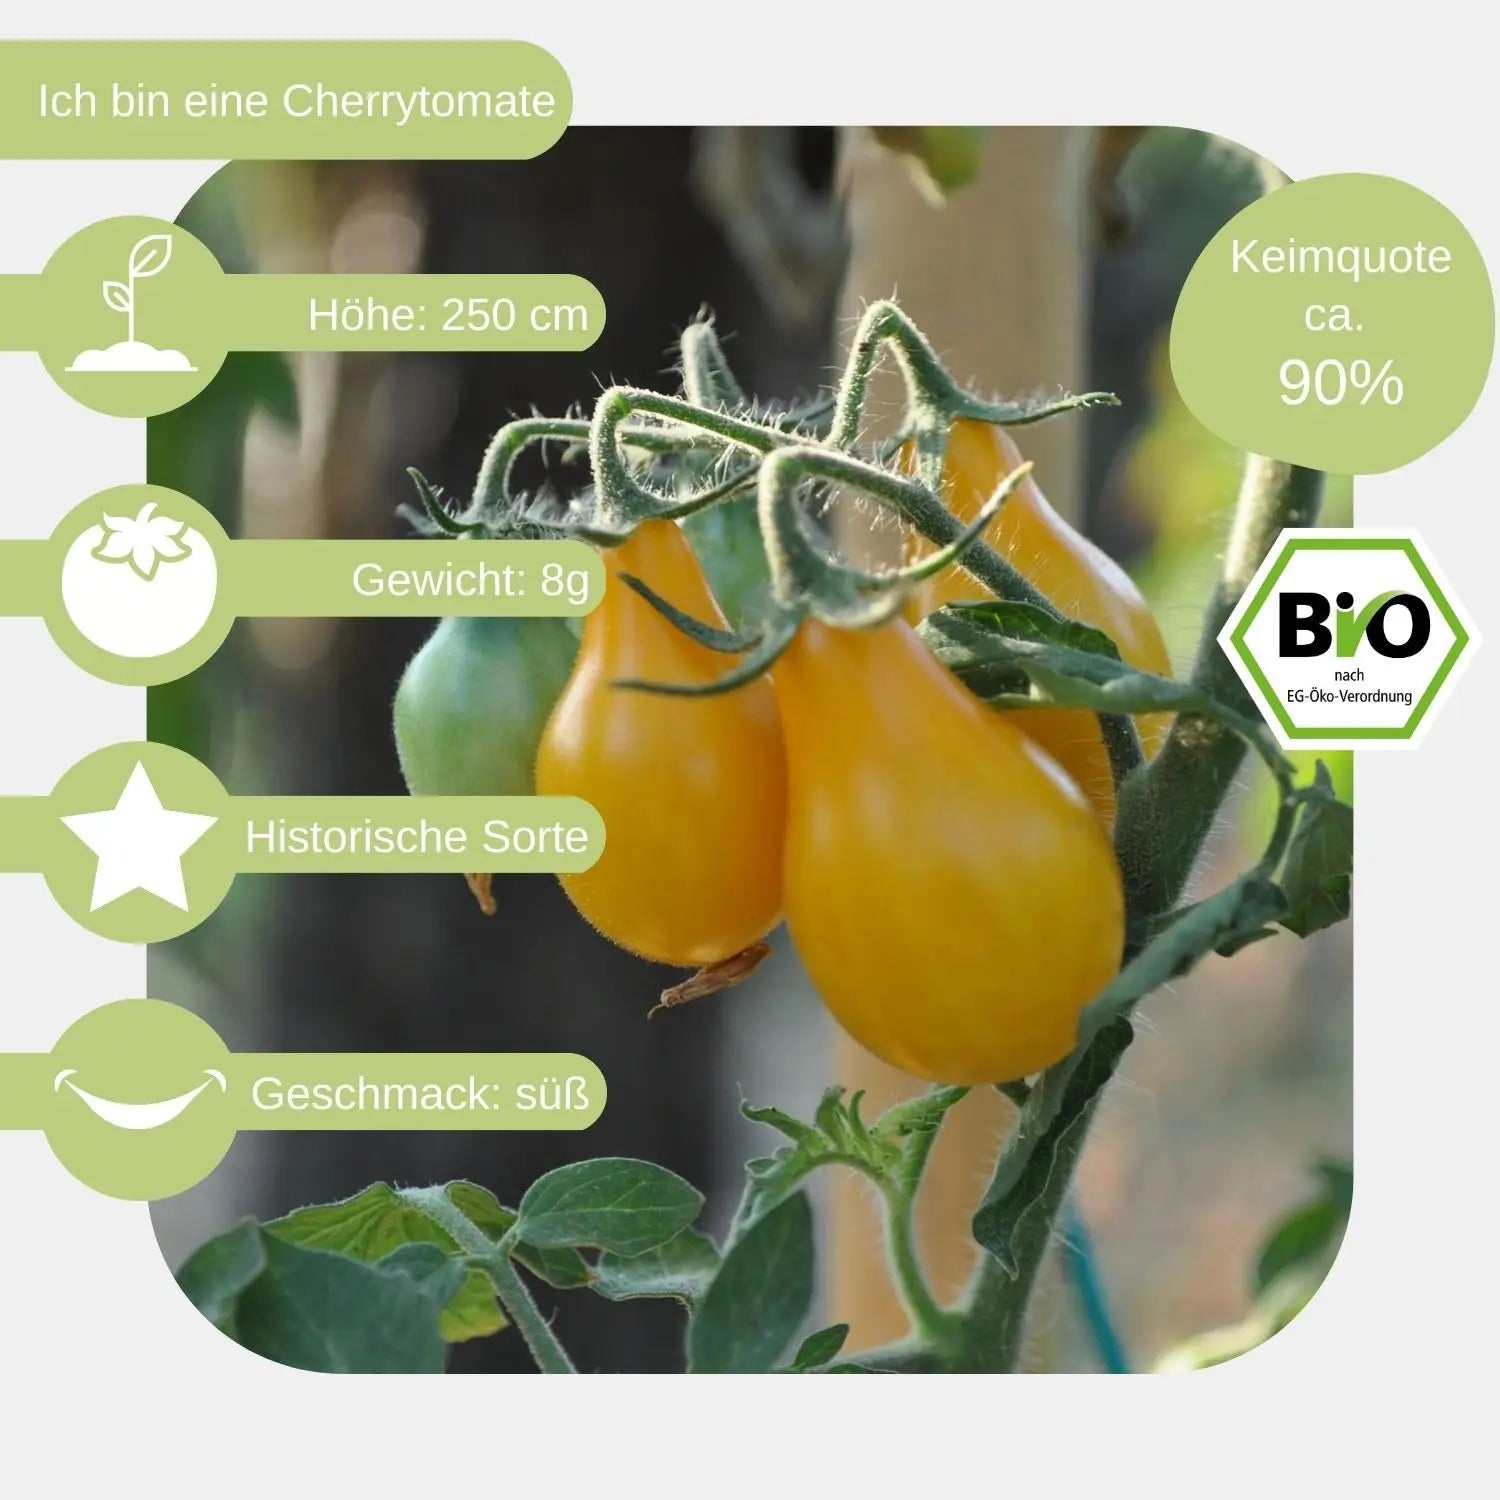 Bio-Cherrytomate-Birnenfoermige-Gelbe-Samen-eigenschaften